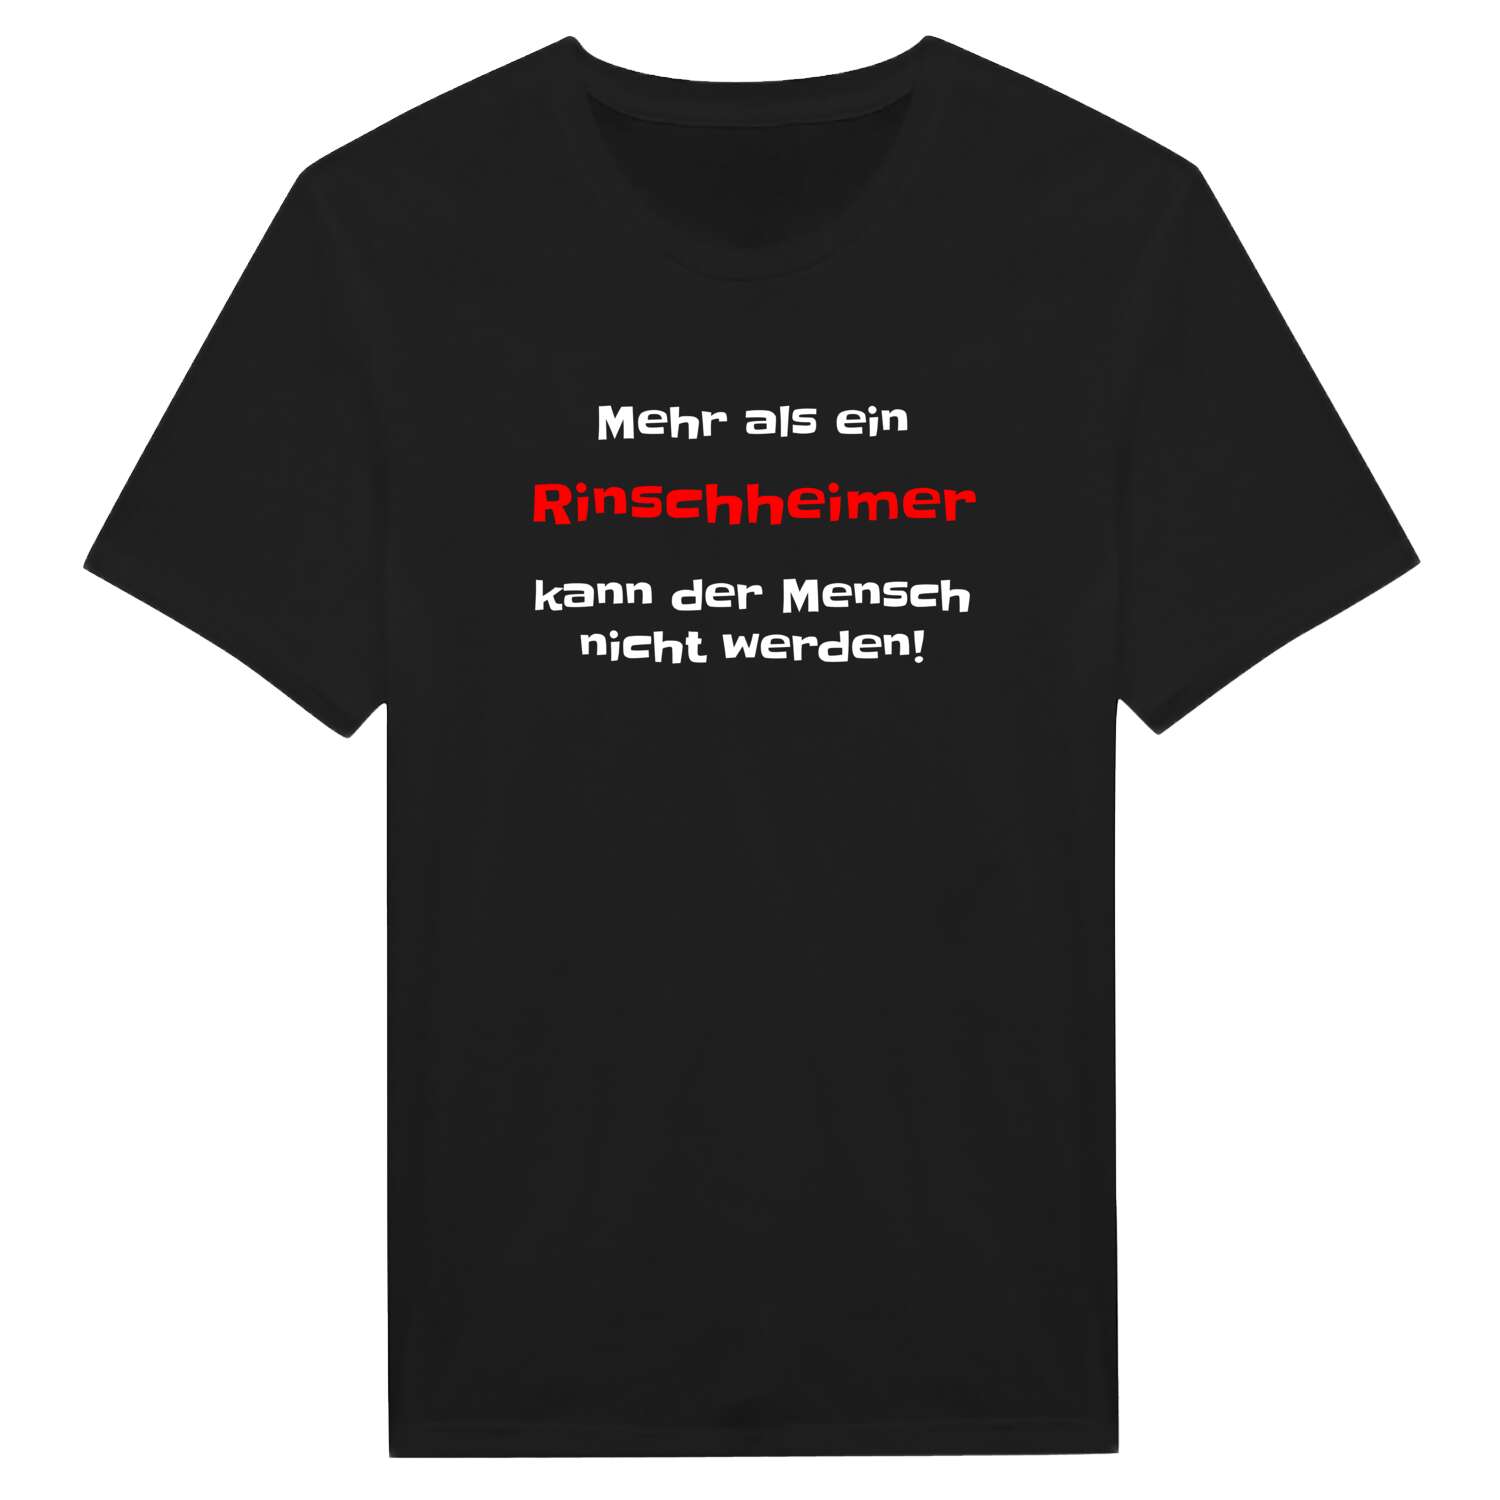 Rinschheim T-Shirt »Mehr als ein«